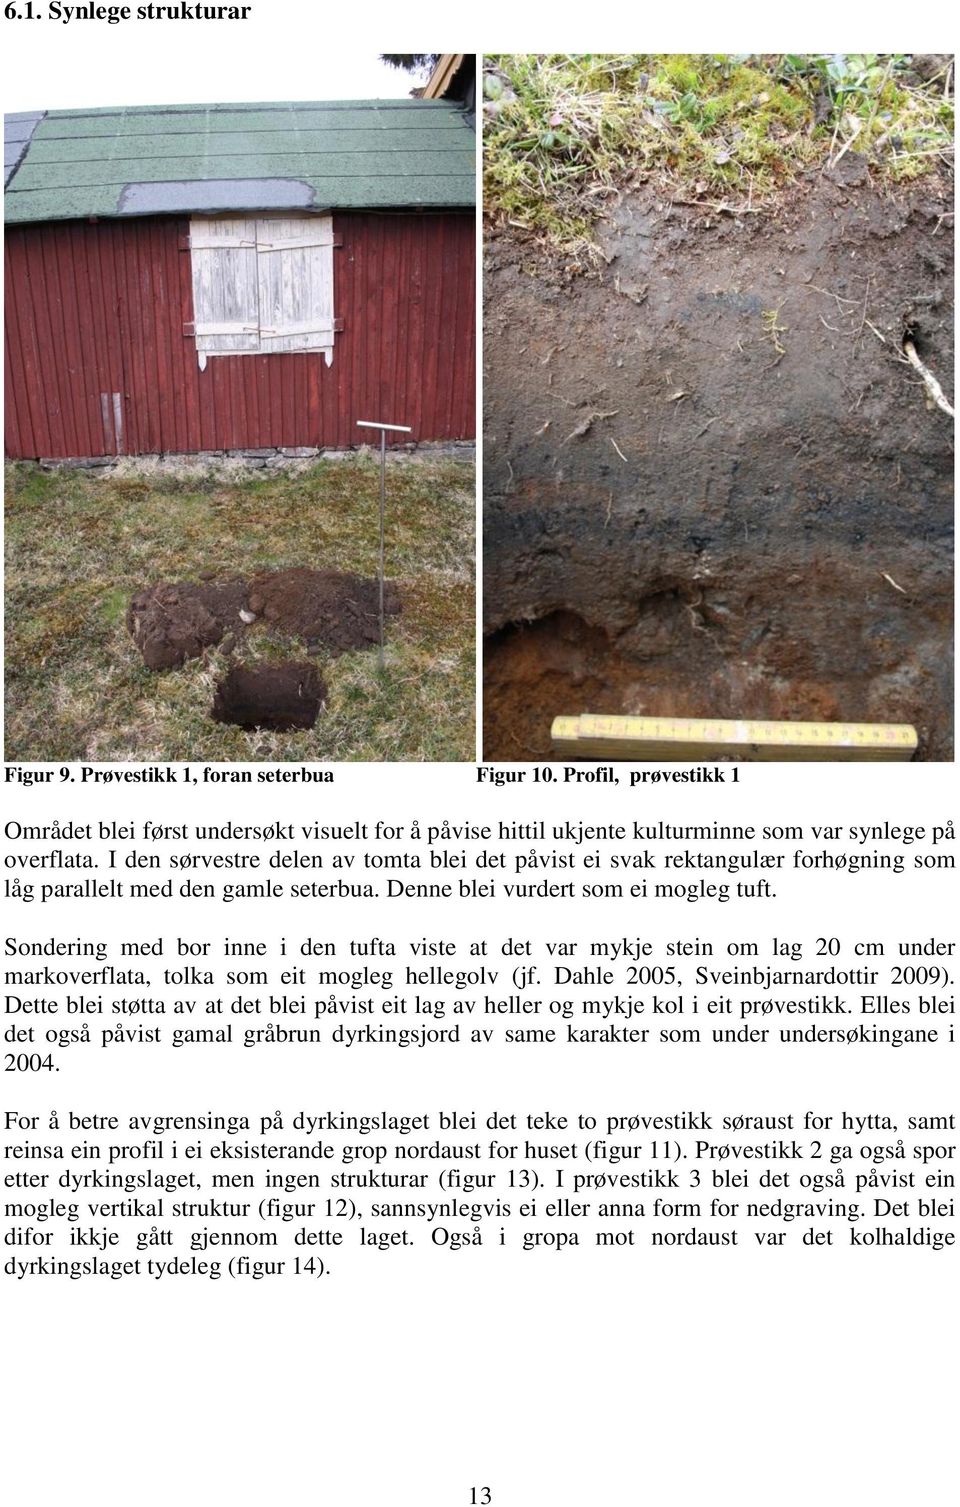 Sondering med bor inne i den tufta viste at det var mykje stein om lag 20 cm under markoverflata, tolka som eit mogleg hellegolv (jf. Dahle 2005, Sveinbjarnardottir 2009).